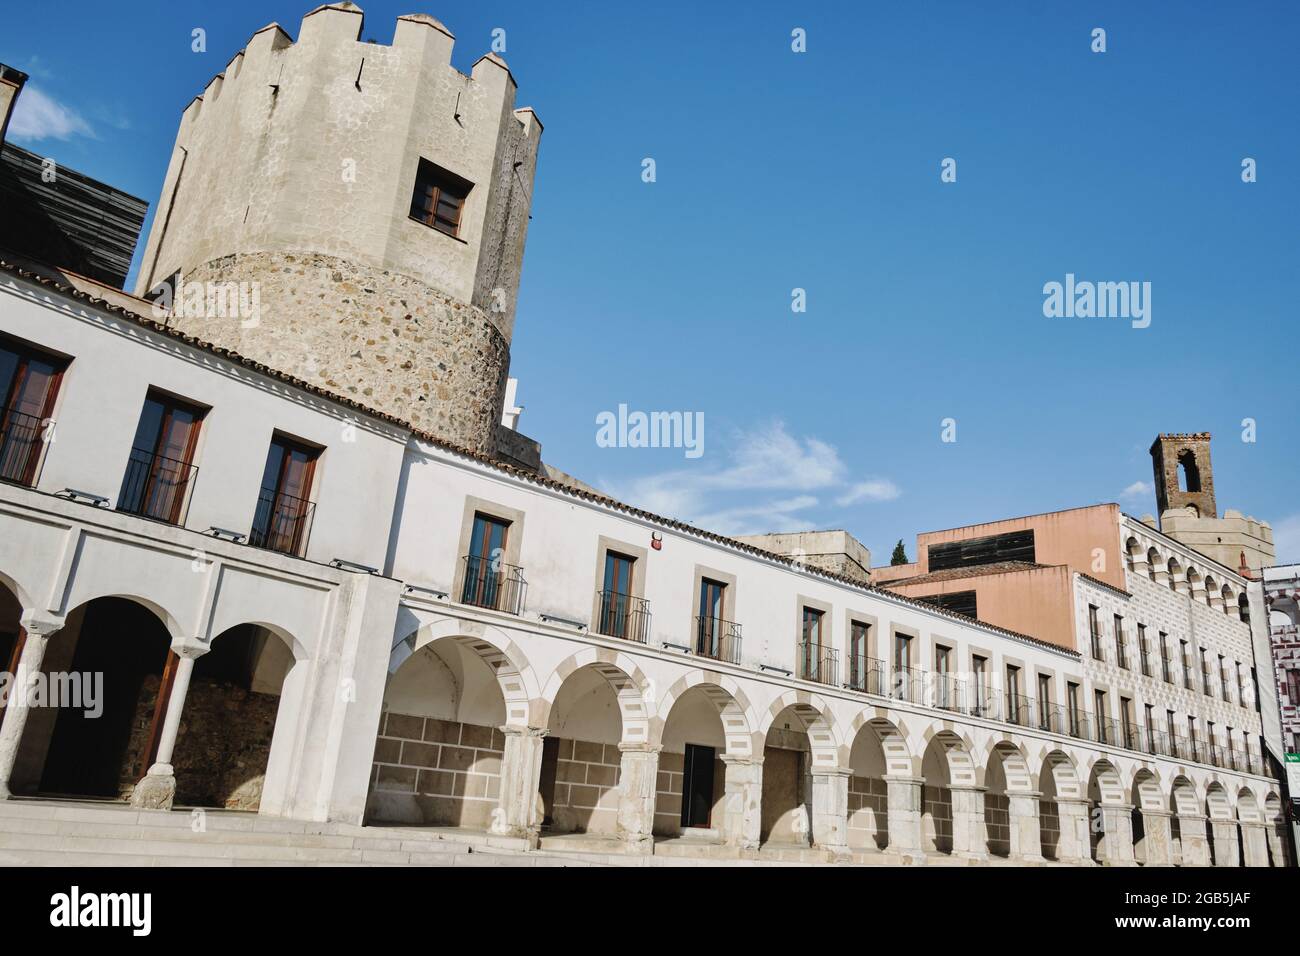 Die Plaza Alta de Badajoz (Spanien) war jahrhundertelang das Zentrum der Stadt, da sie die Grenzen der muslimischen Zitadelle überschritten hat. Bevor es bekannt war als Stockfoto